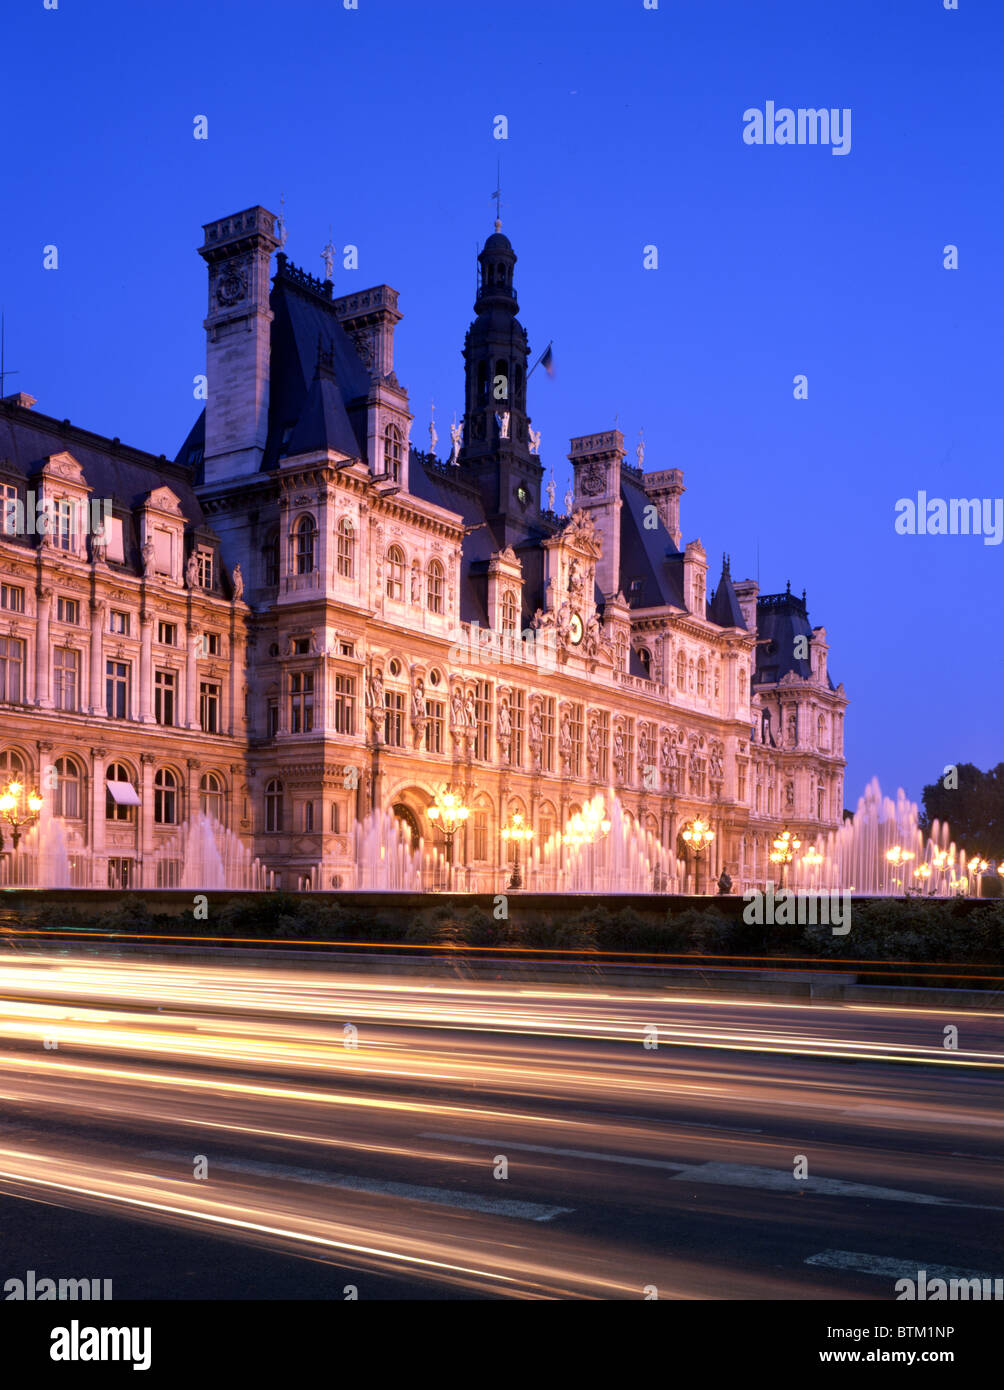 Hotel de Ville, Paris, France Stock Photo - Alamy